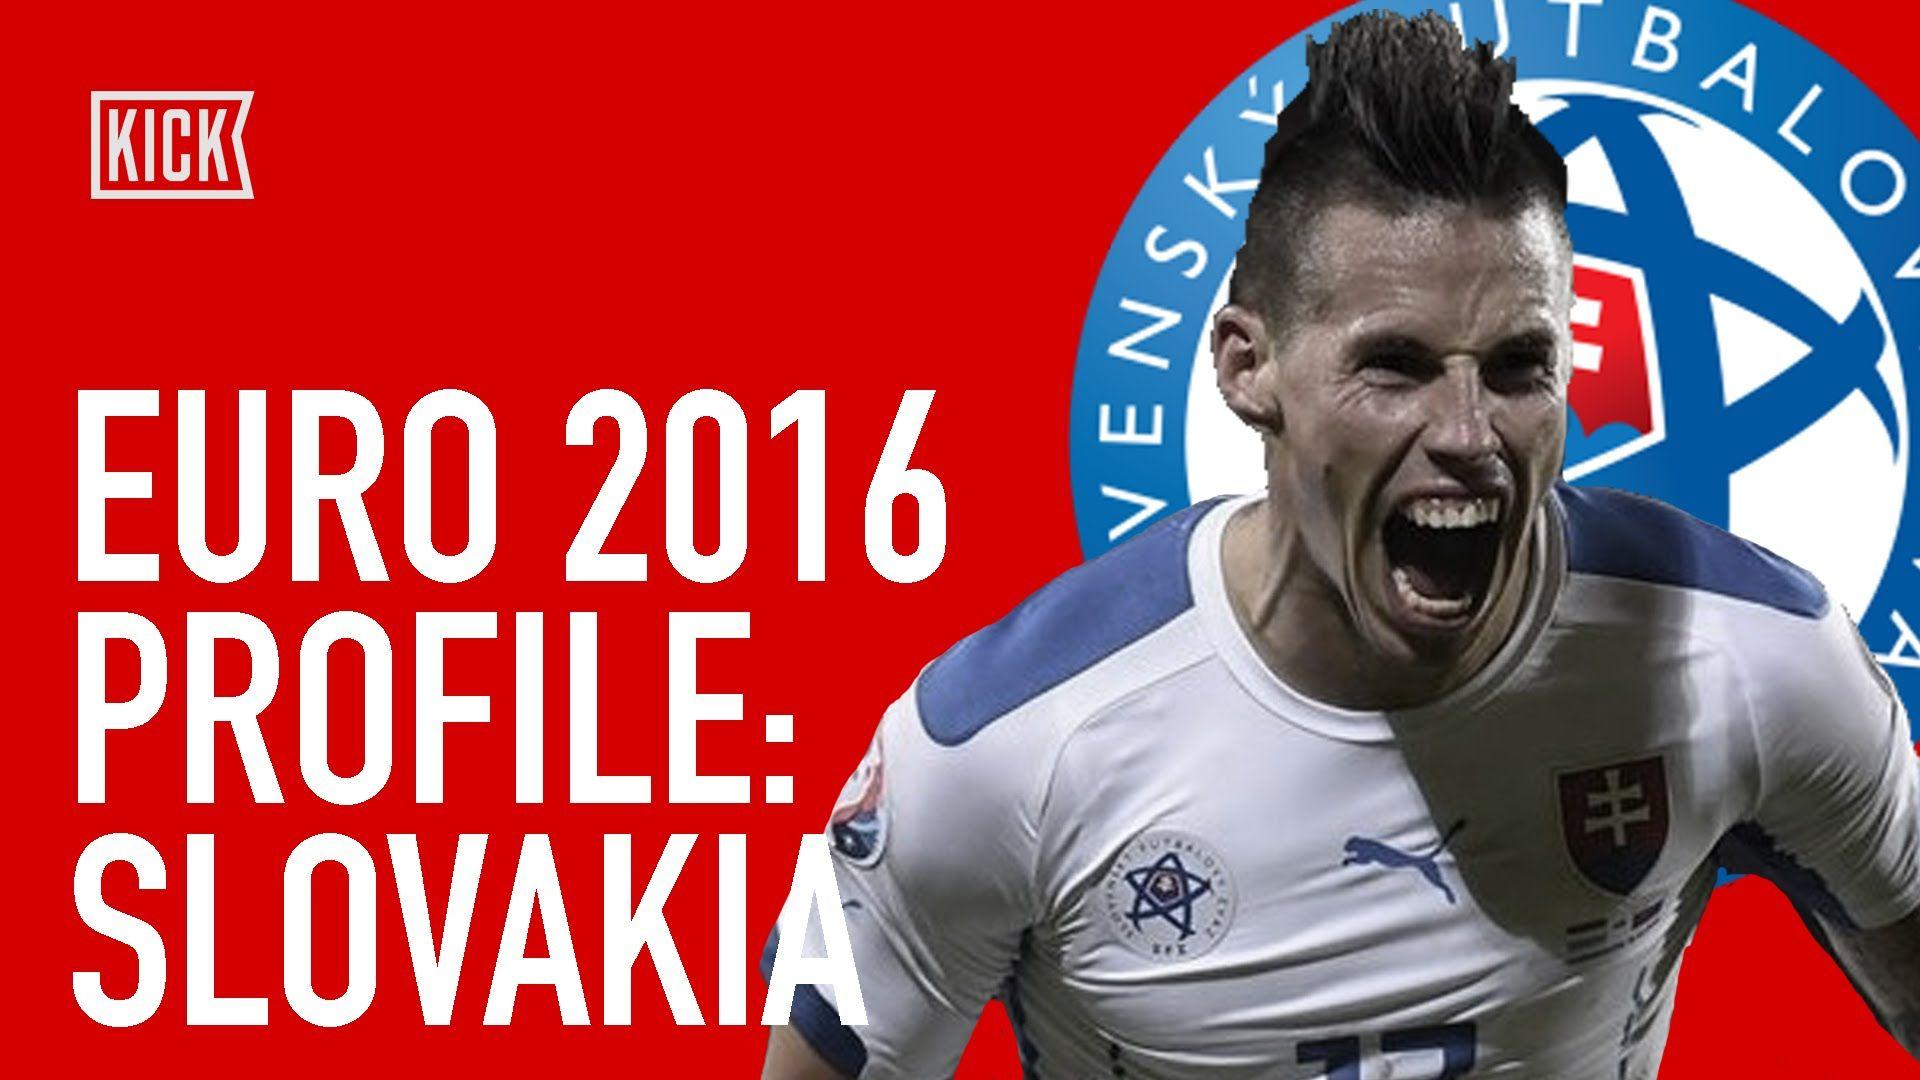 Marek Hamsik Leads Slovakia at Euro 2016